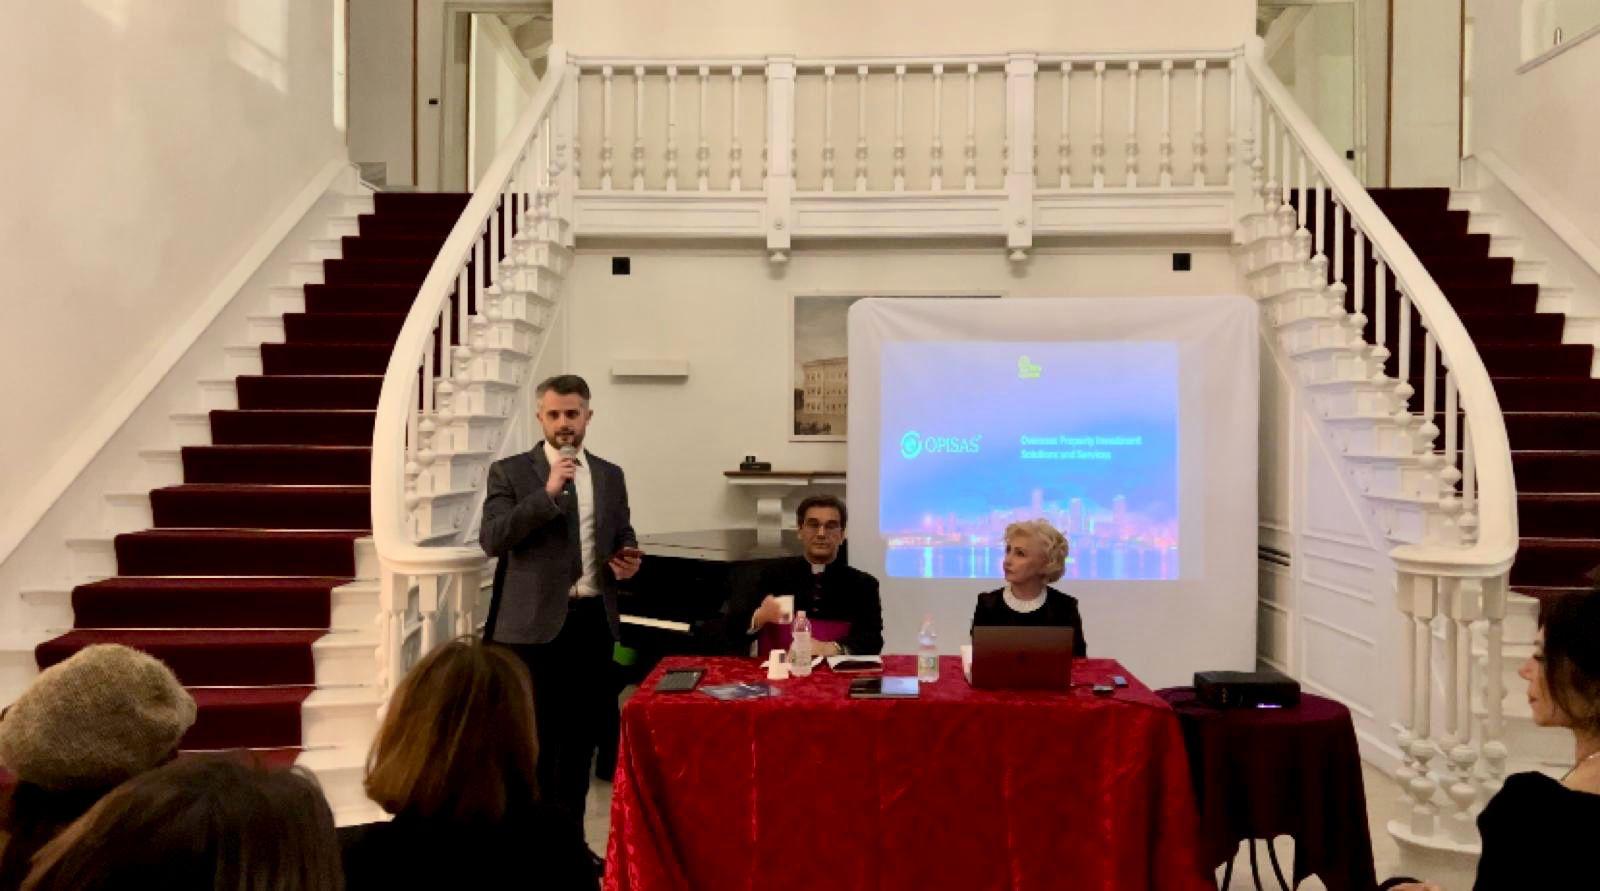  "Armonia Culturale e Investimenti Immobiliari Globali" al Circolo Montecitorio di Roma con Tota Pulchra e Opisas